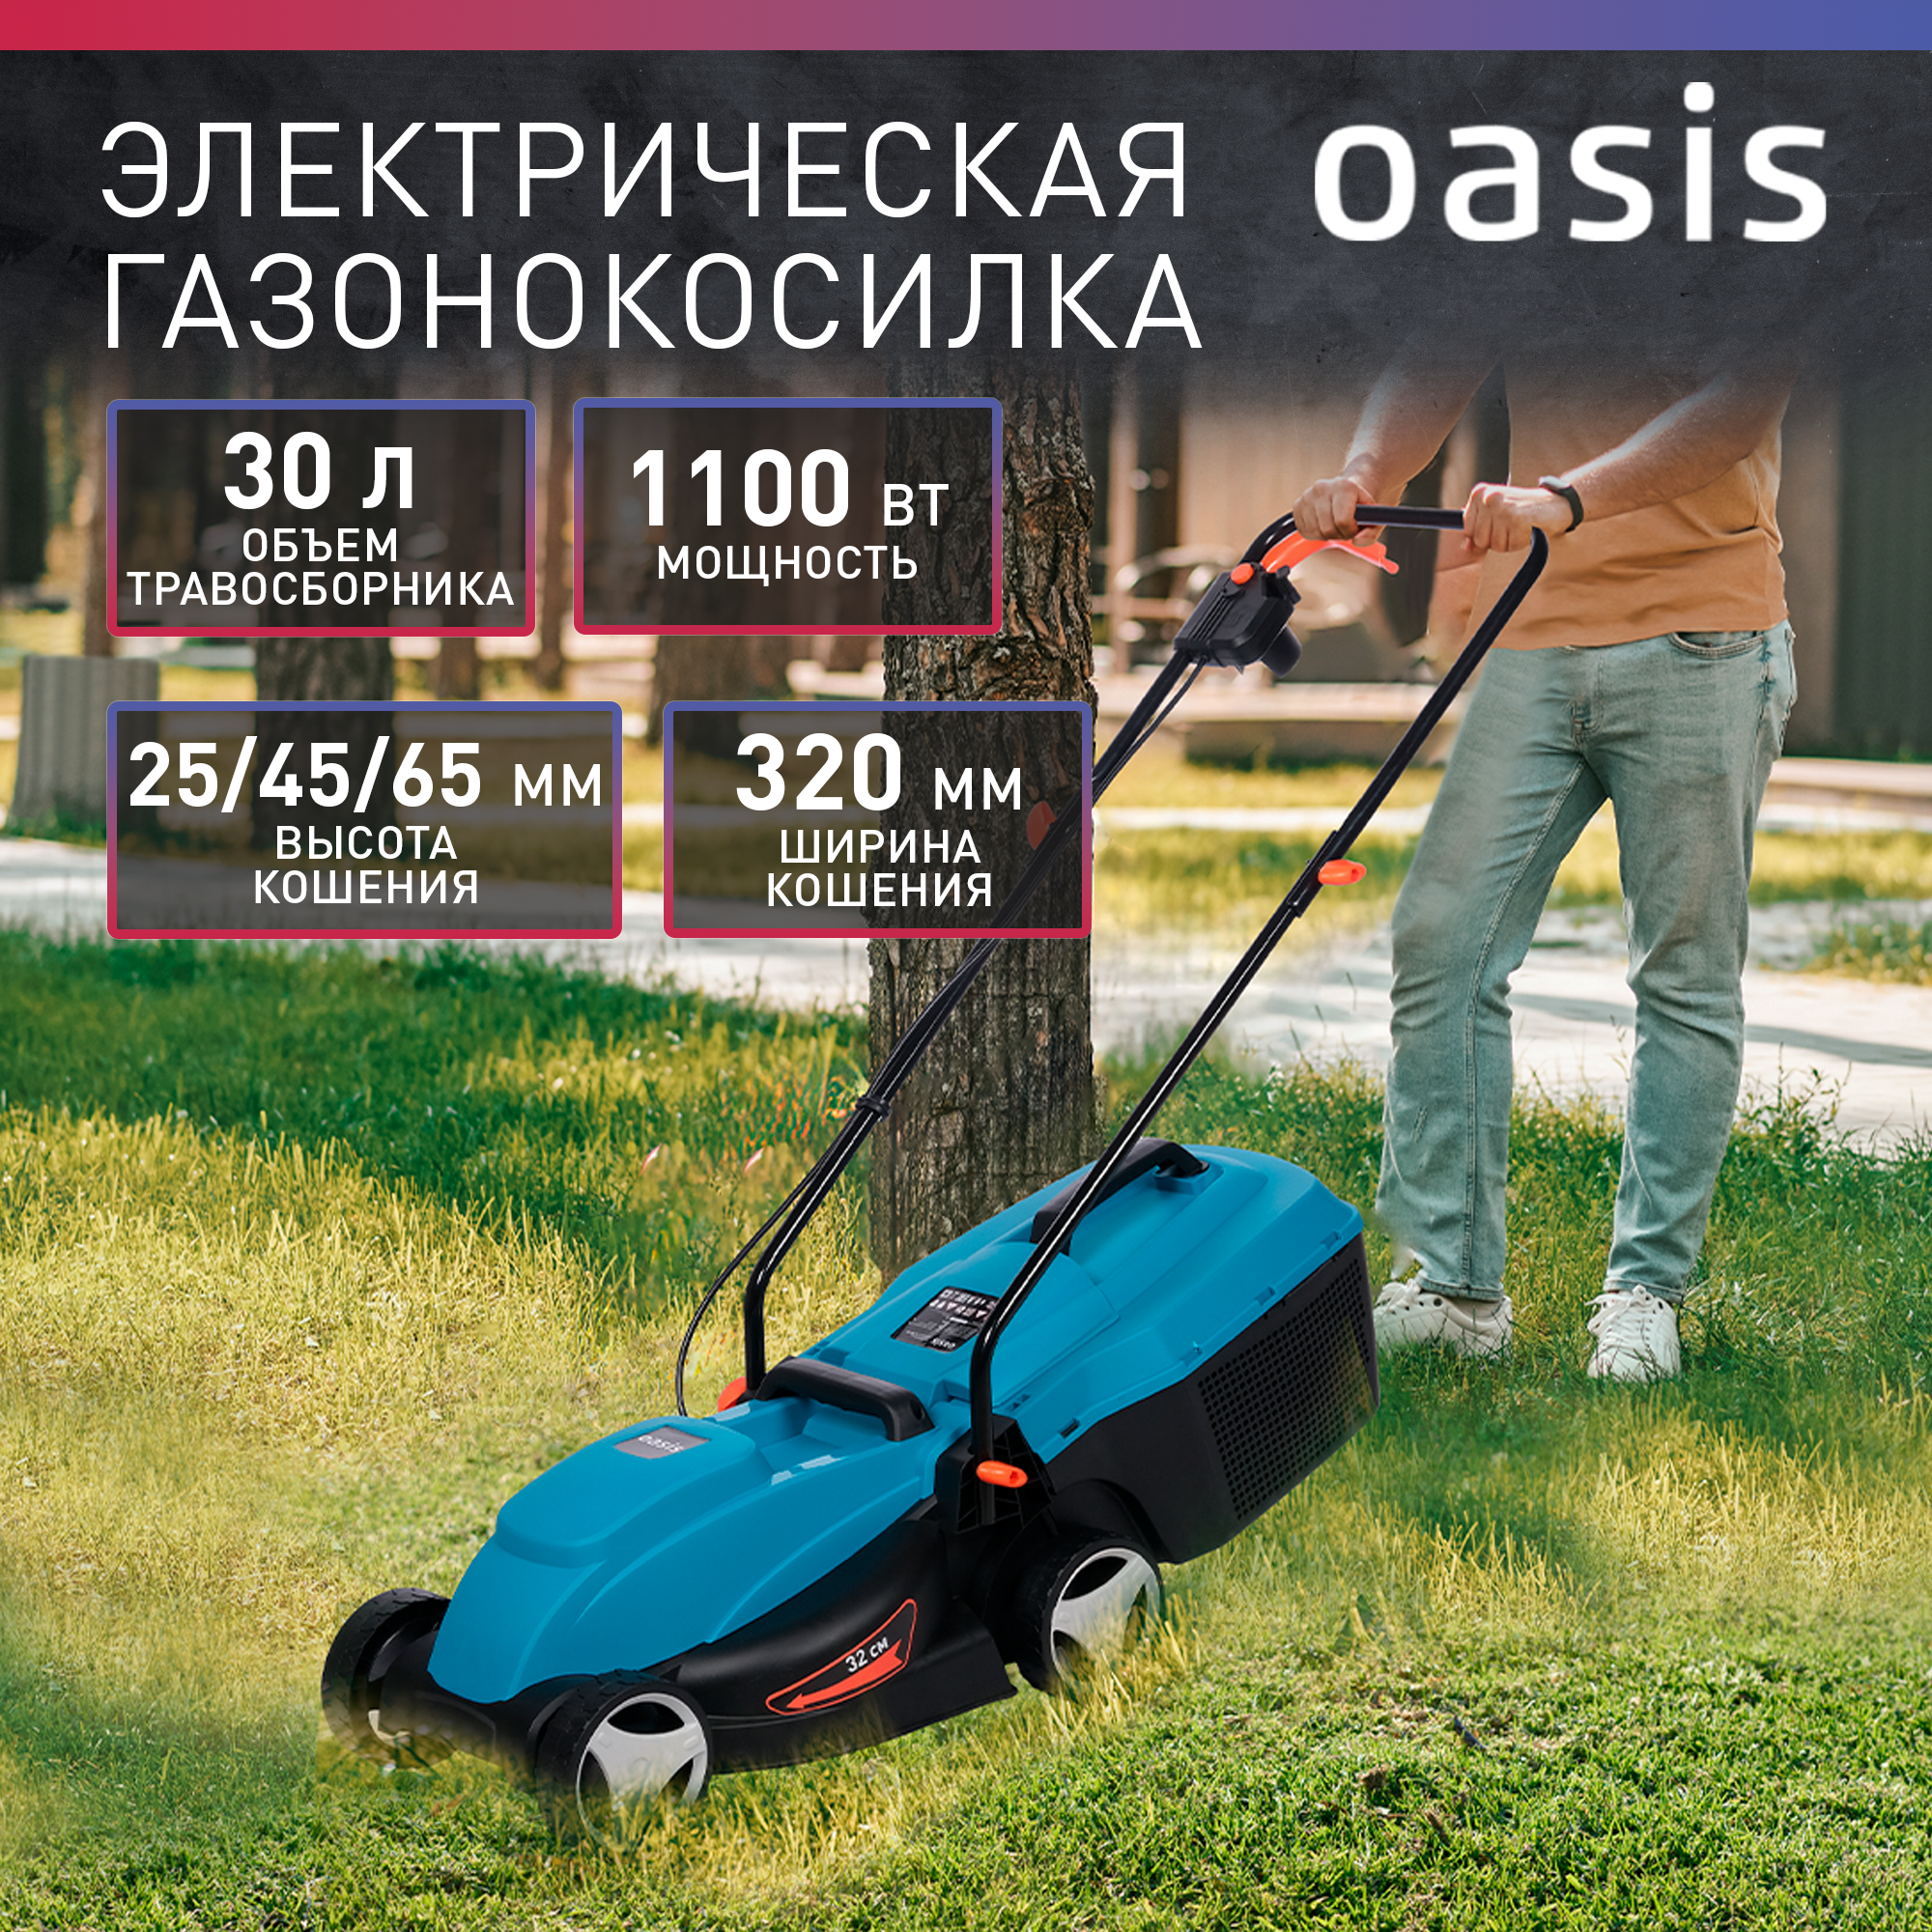 Электрическая газонокосилка Oasis GE-10 2022 1100 Вт 32 см